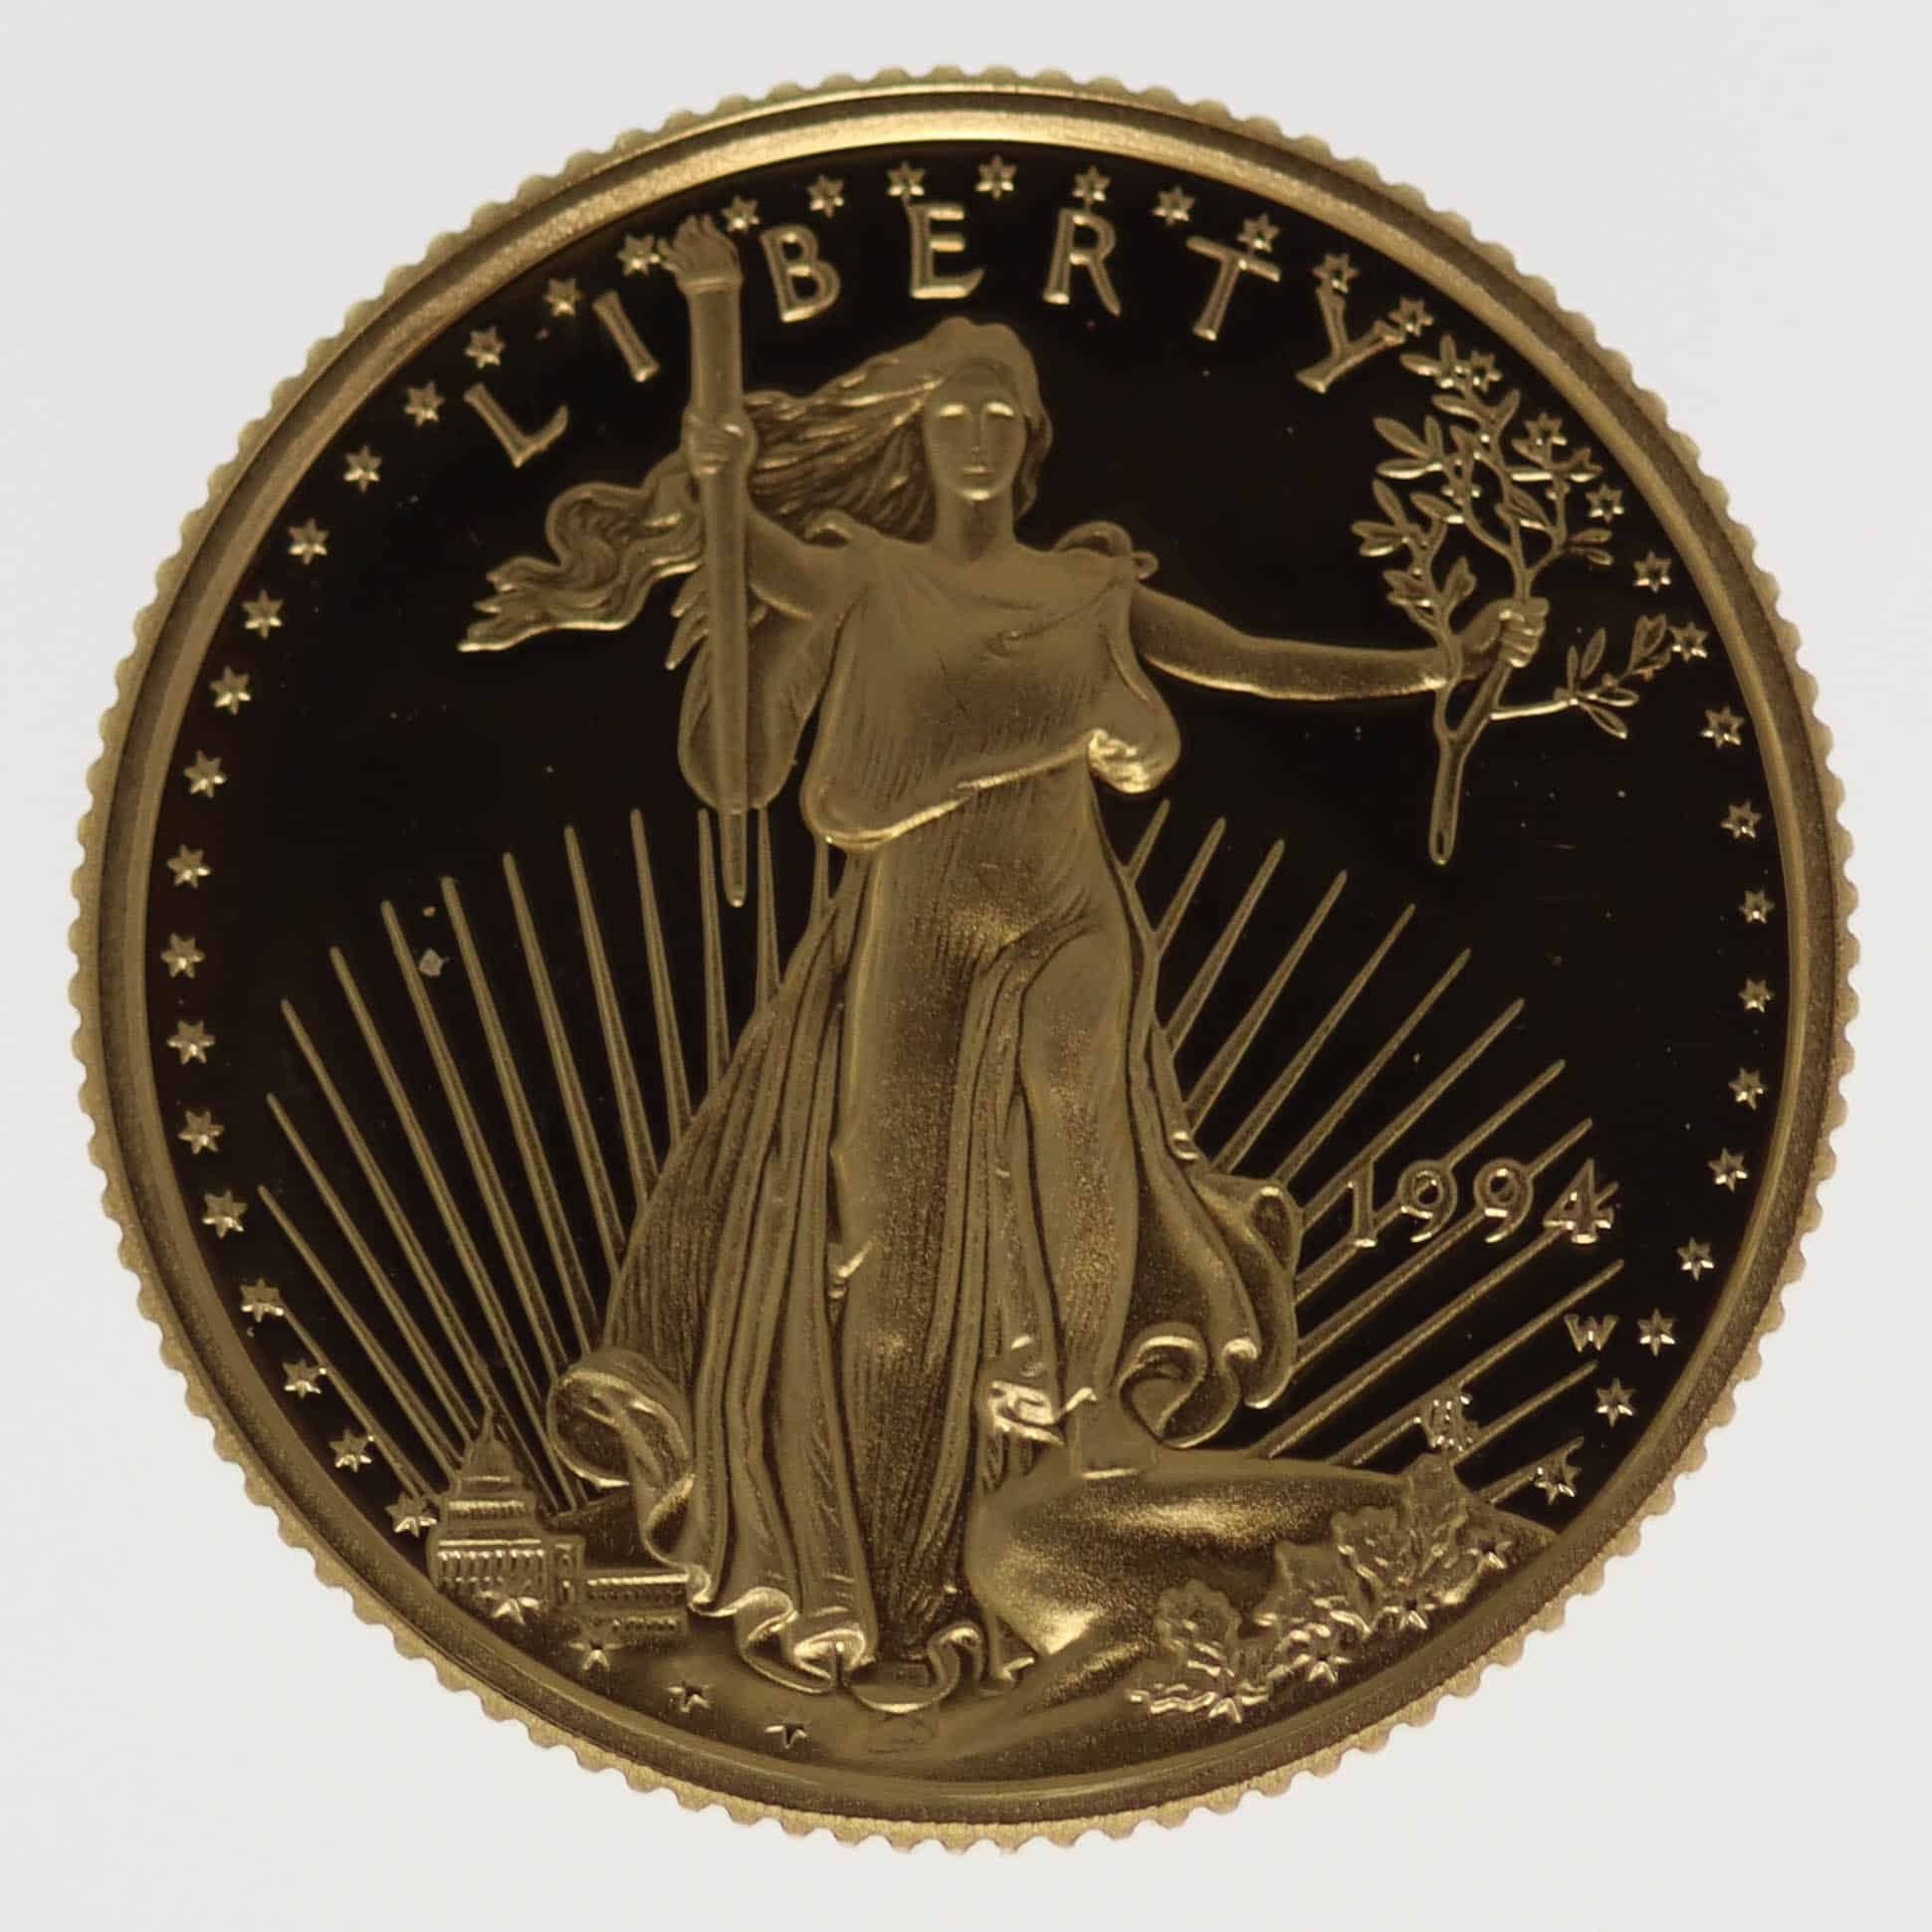 usa - USA 5 Dollars 1994 American Eagle proof